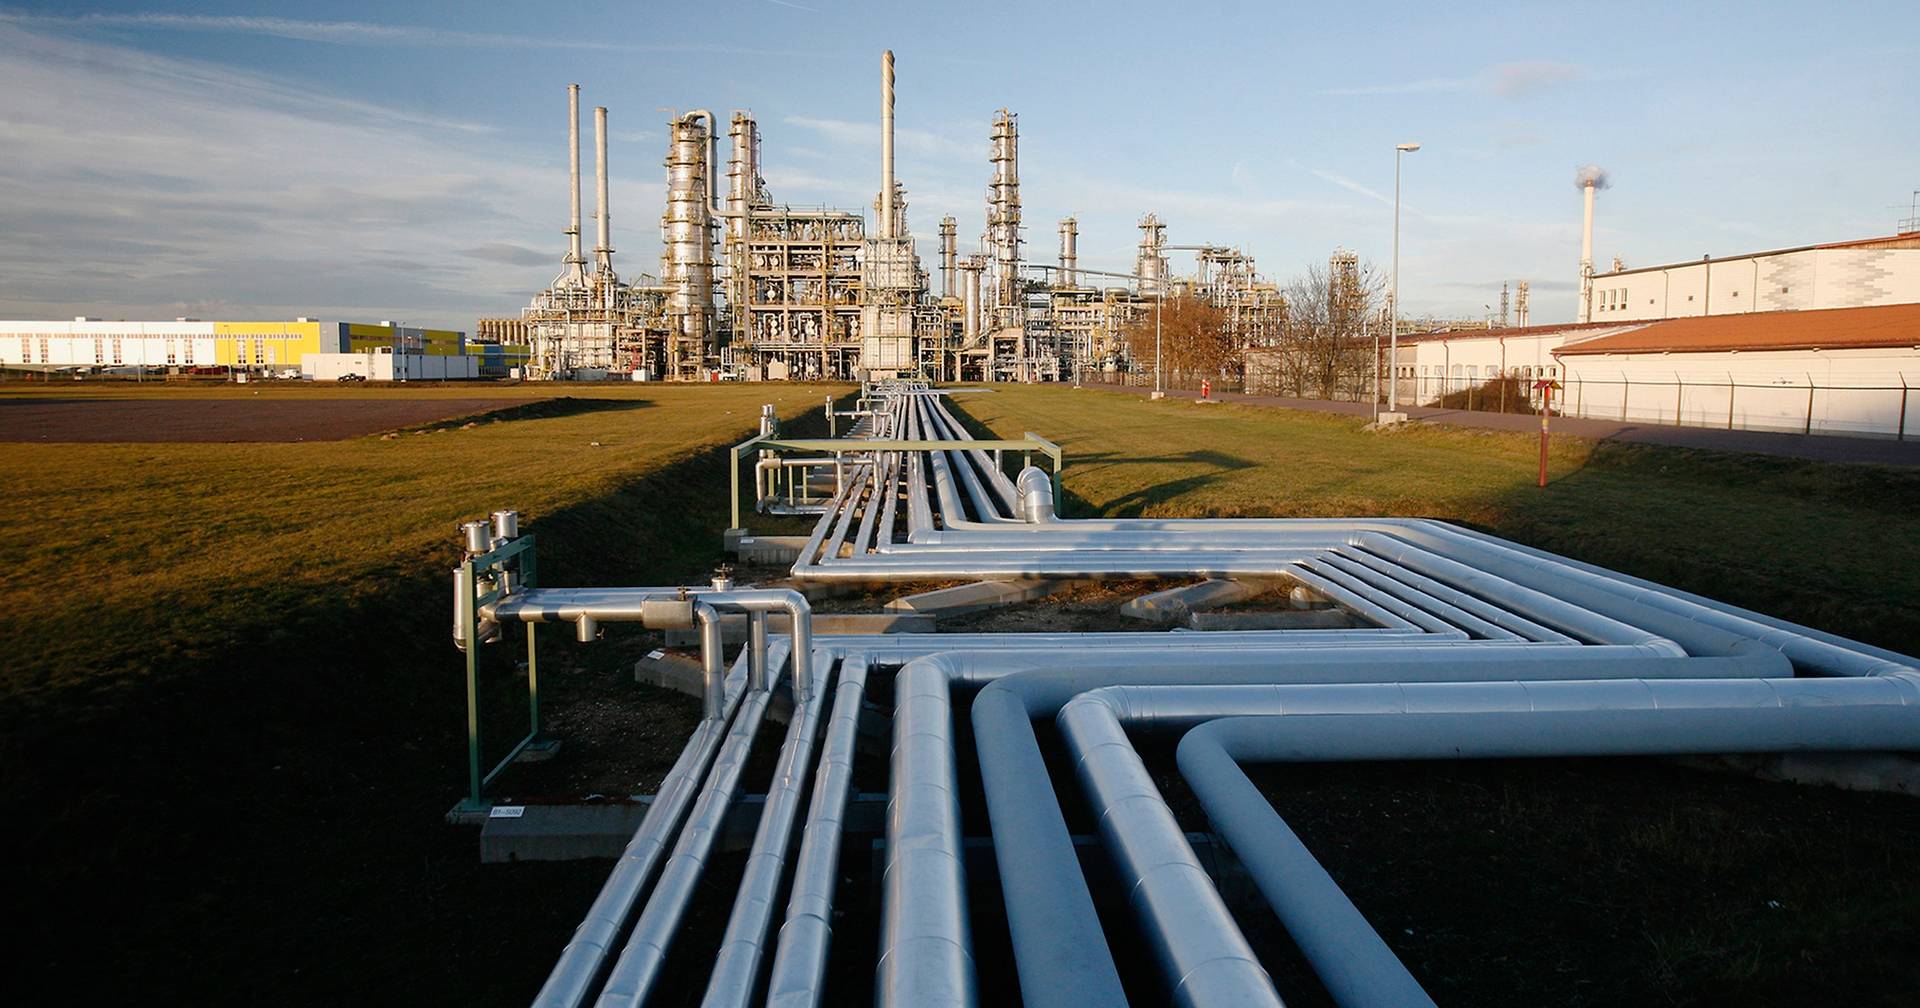 Die Regulierungsbehörde warnte davor, dass die Gaskrise in Deutschland „noch lange nicht vorbei“ sei und weitere Engpässe bevorstehen könnten